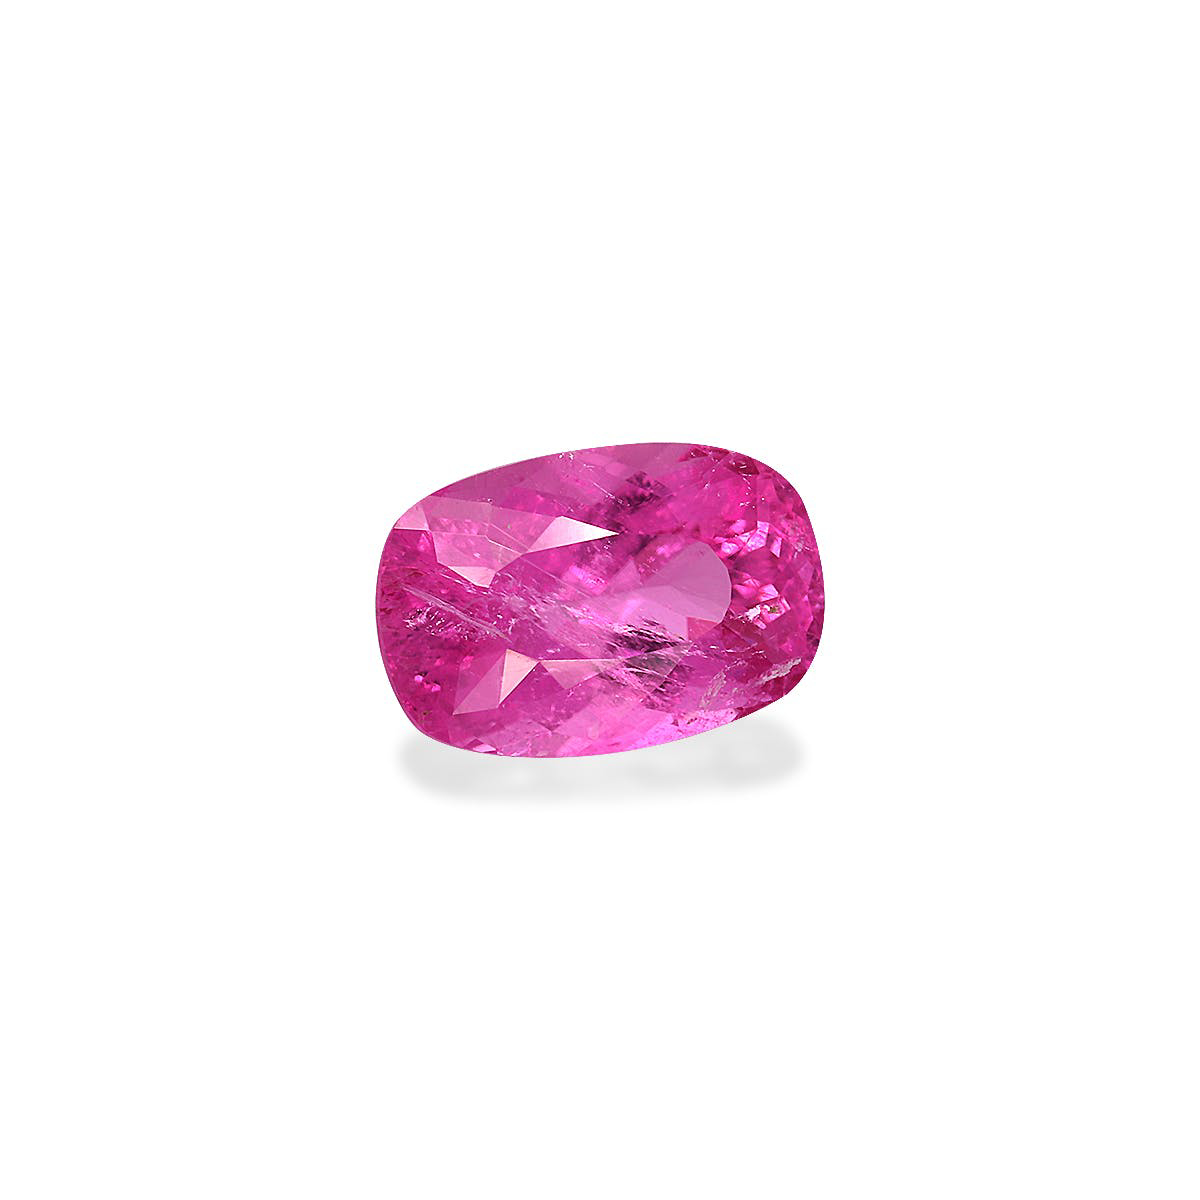 Picture of Fuscia Pink Rubellite Tourmaline 2.55ct (RL0897)